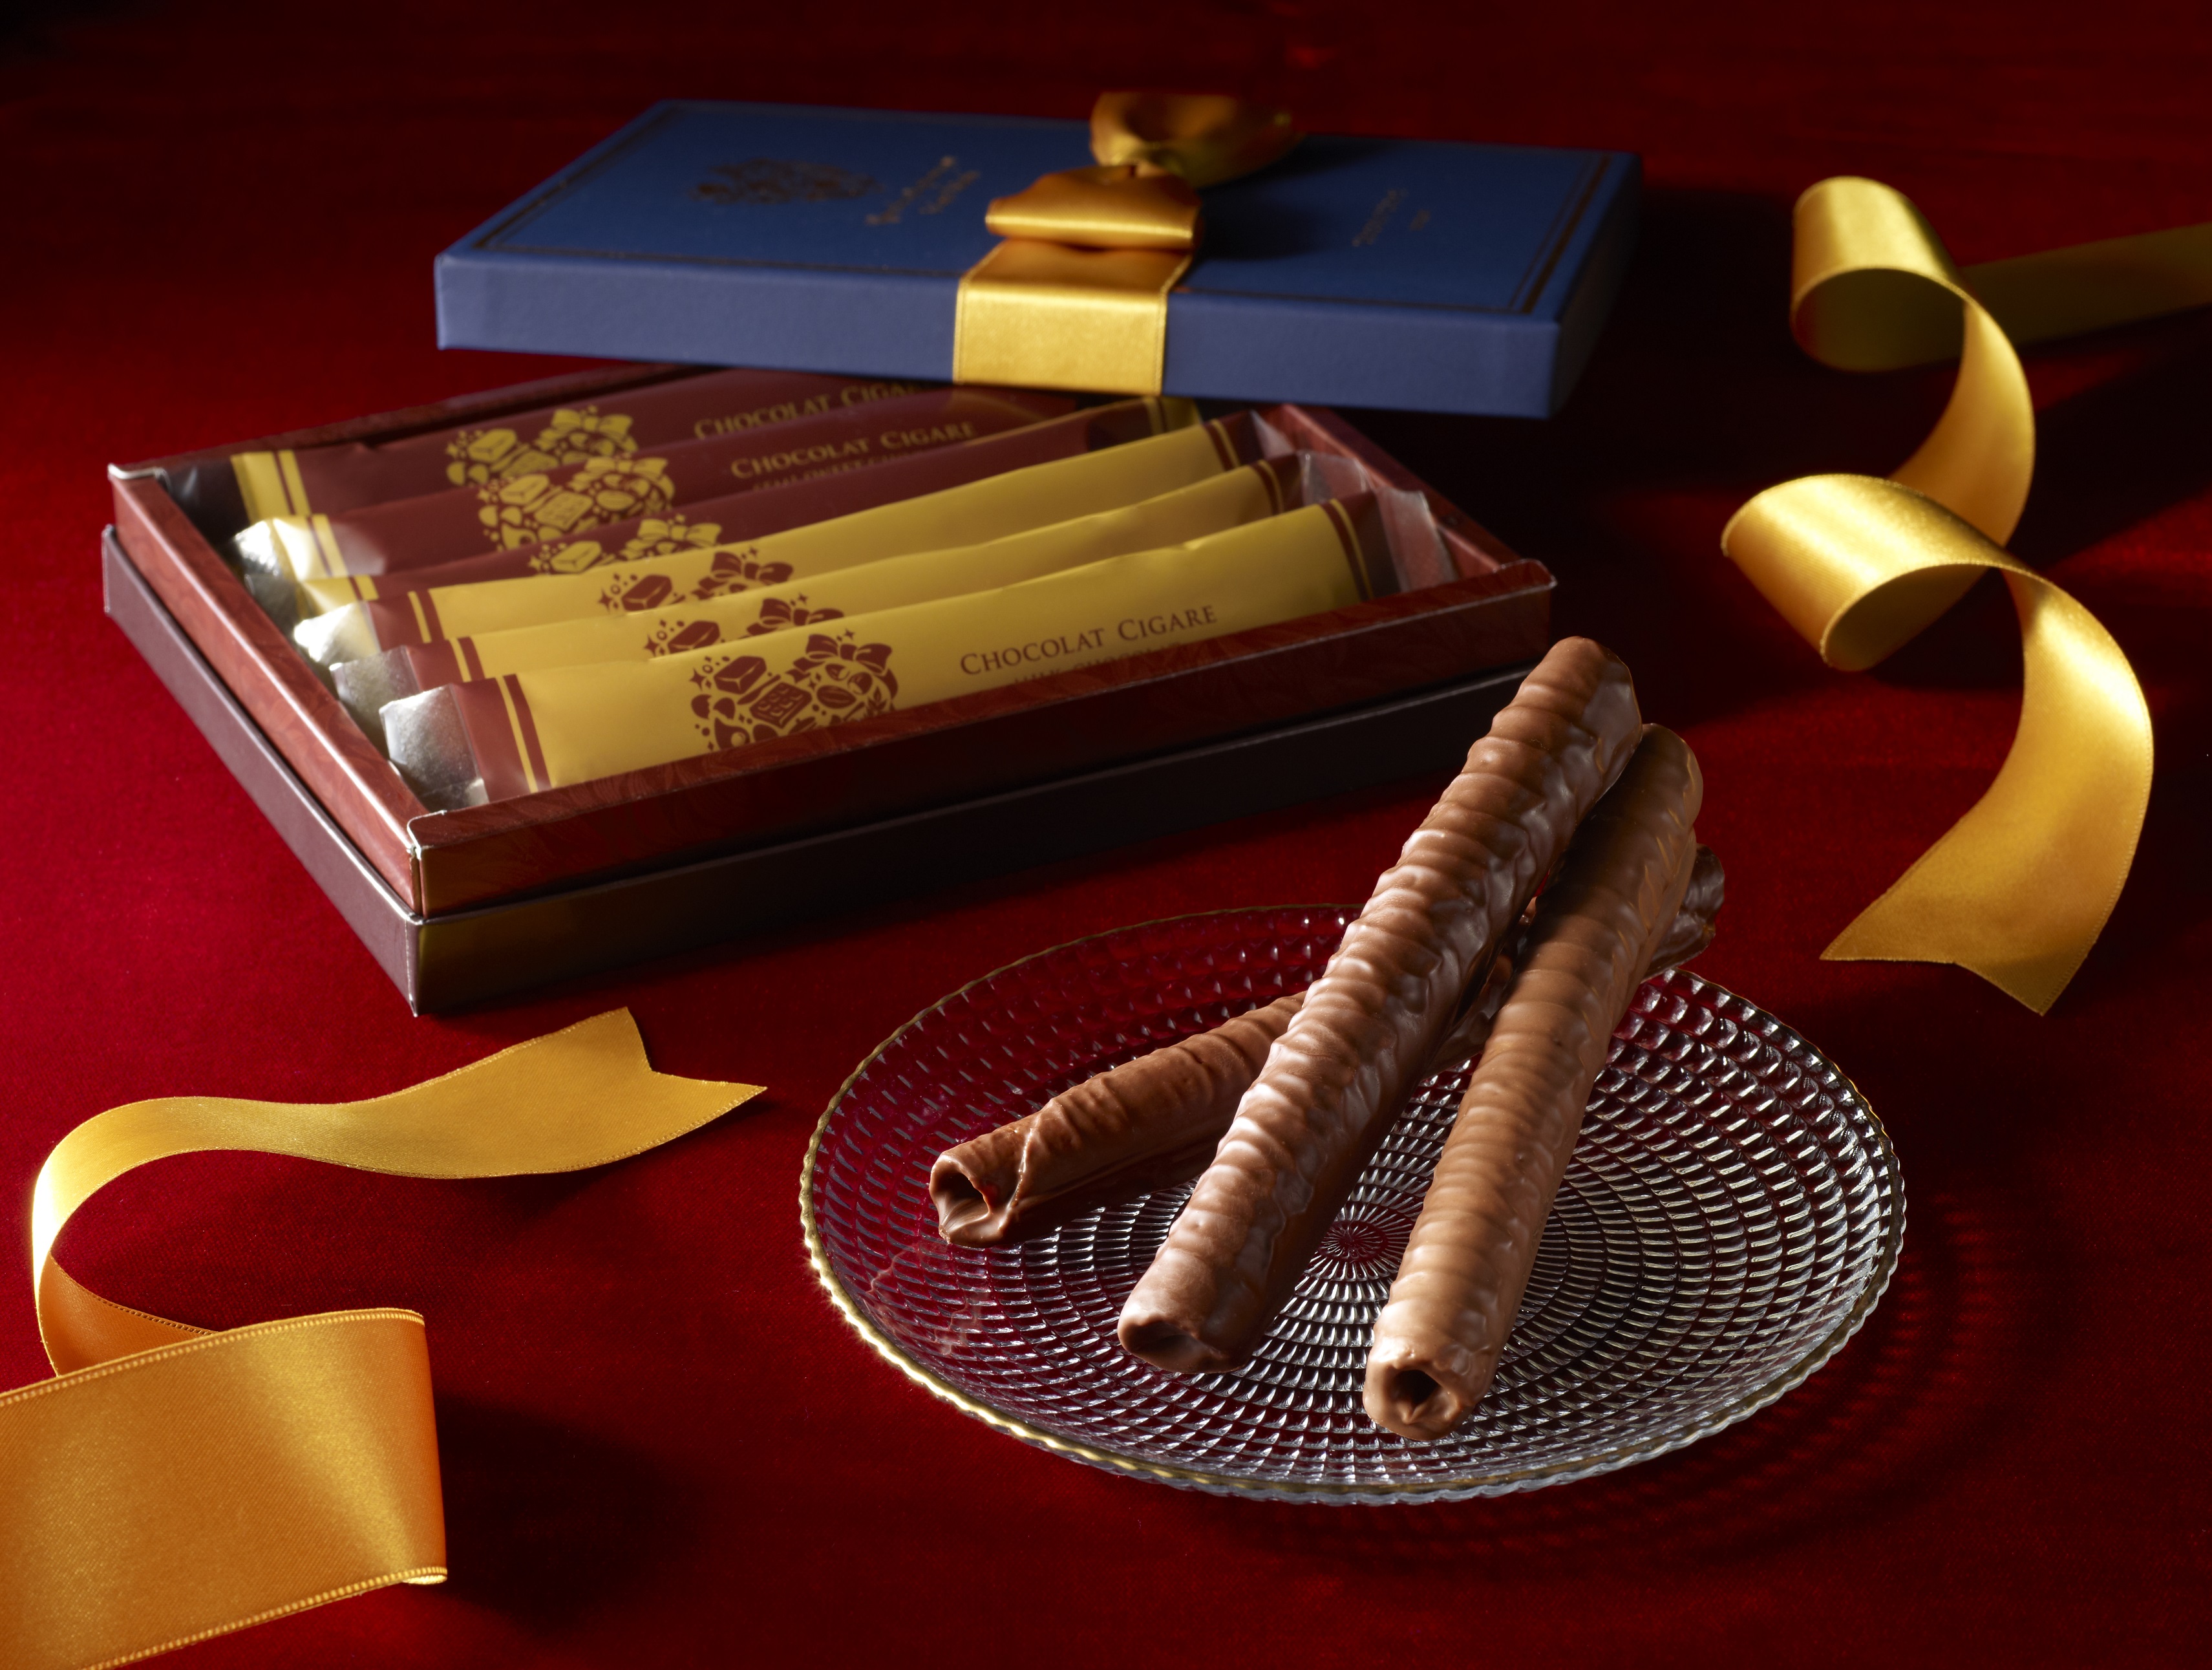 シガール R をチョコレートで贅沢に包み込んだ ショコラ シガール 登場 株式会社ヨックモックのプレスリリース